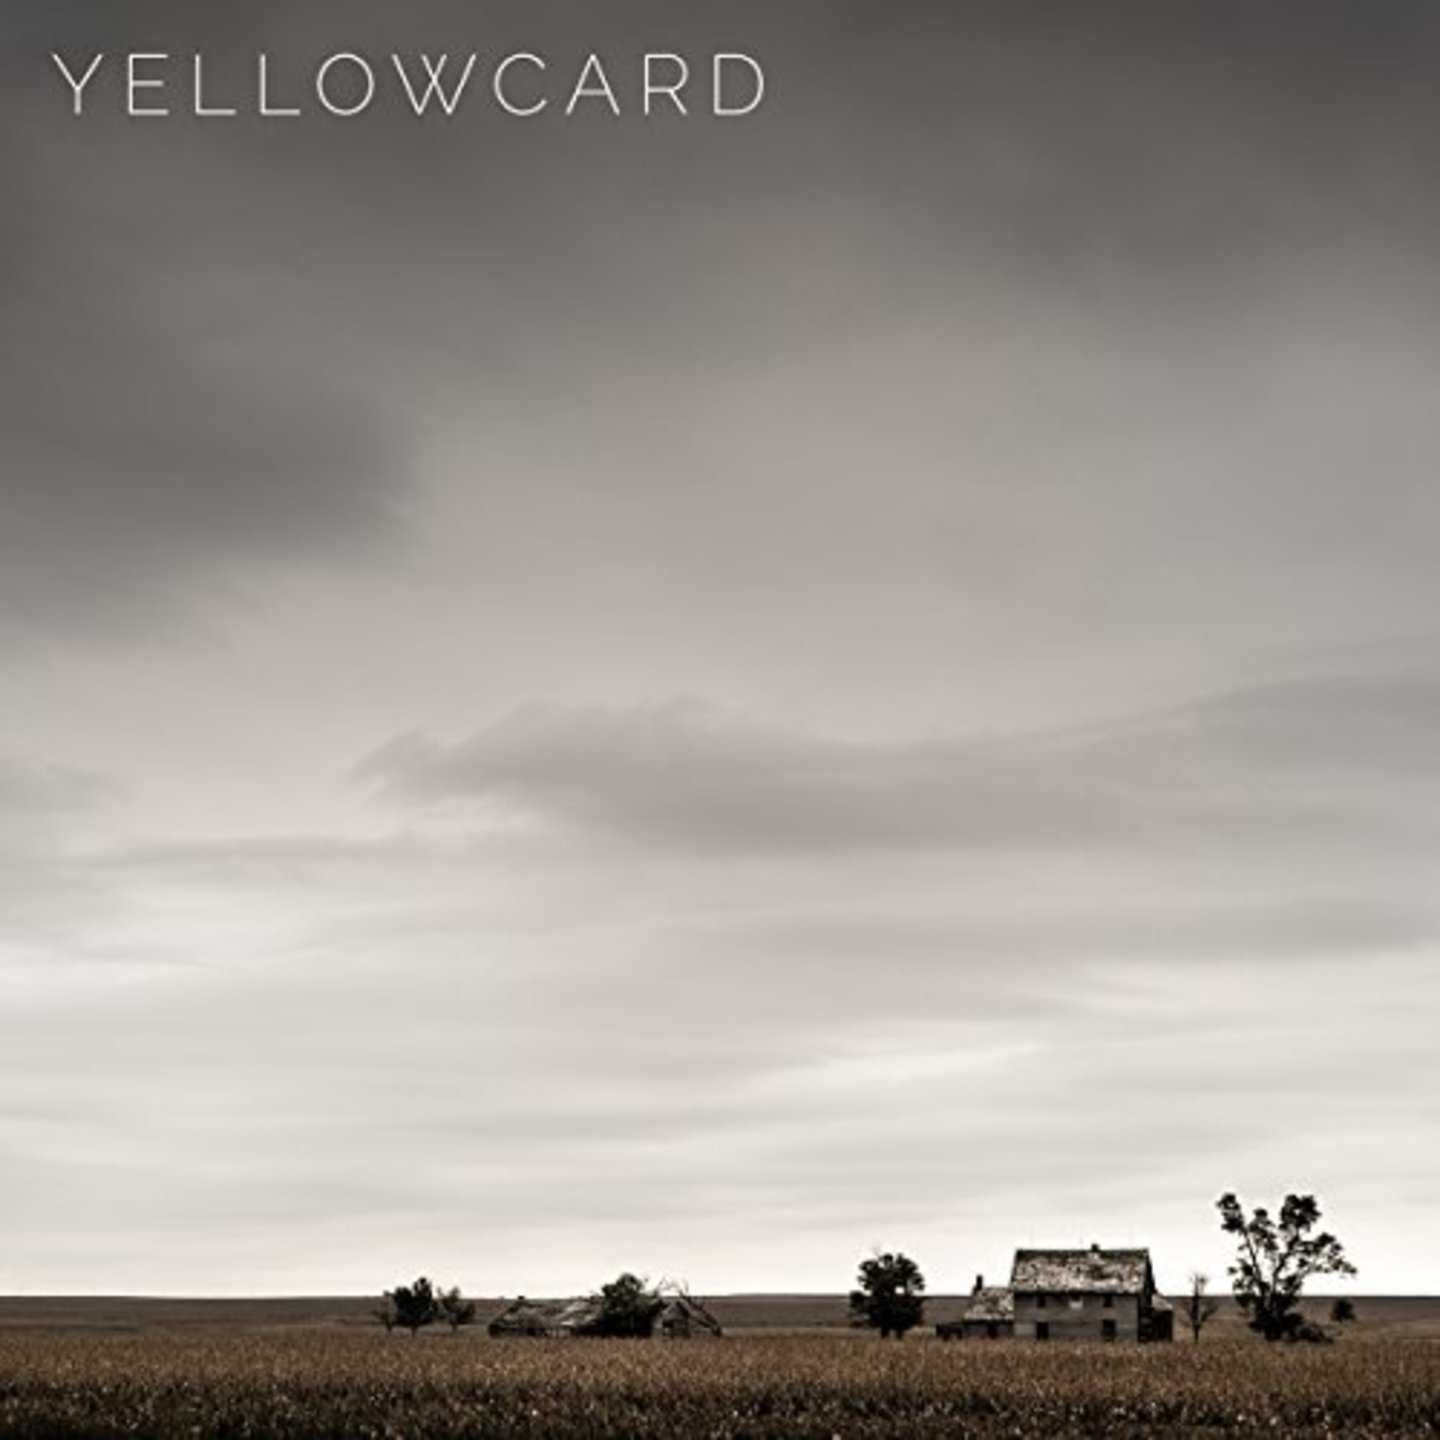 YELLOWCARD - Yellowcard 2xLP Grey Vinyl